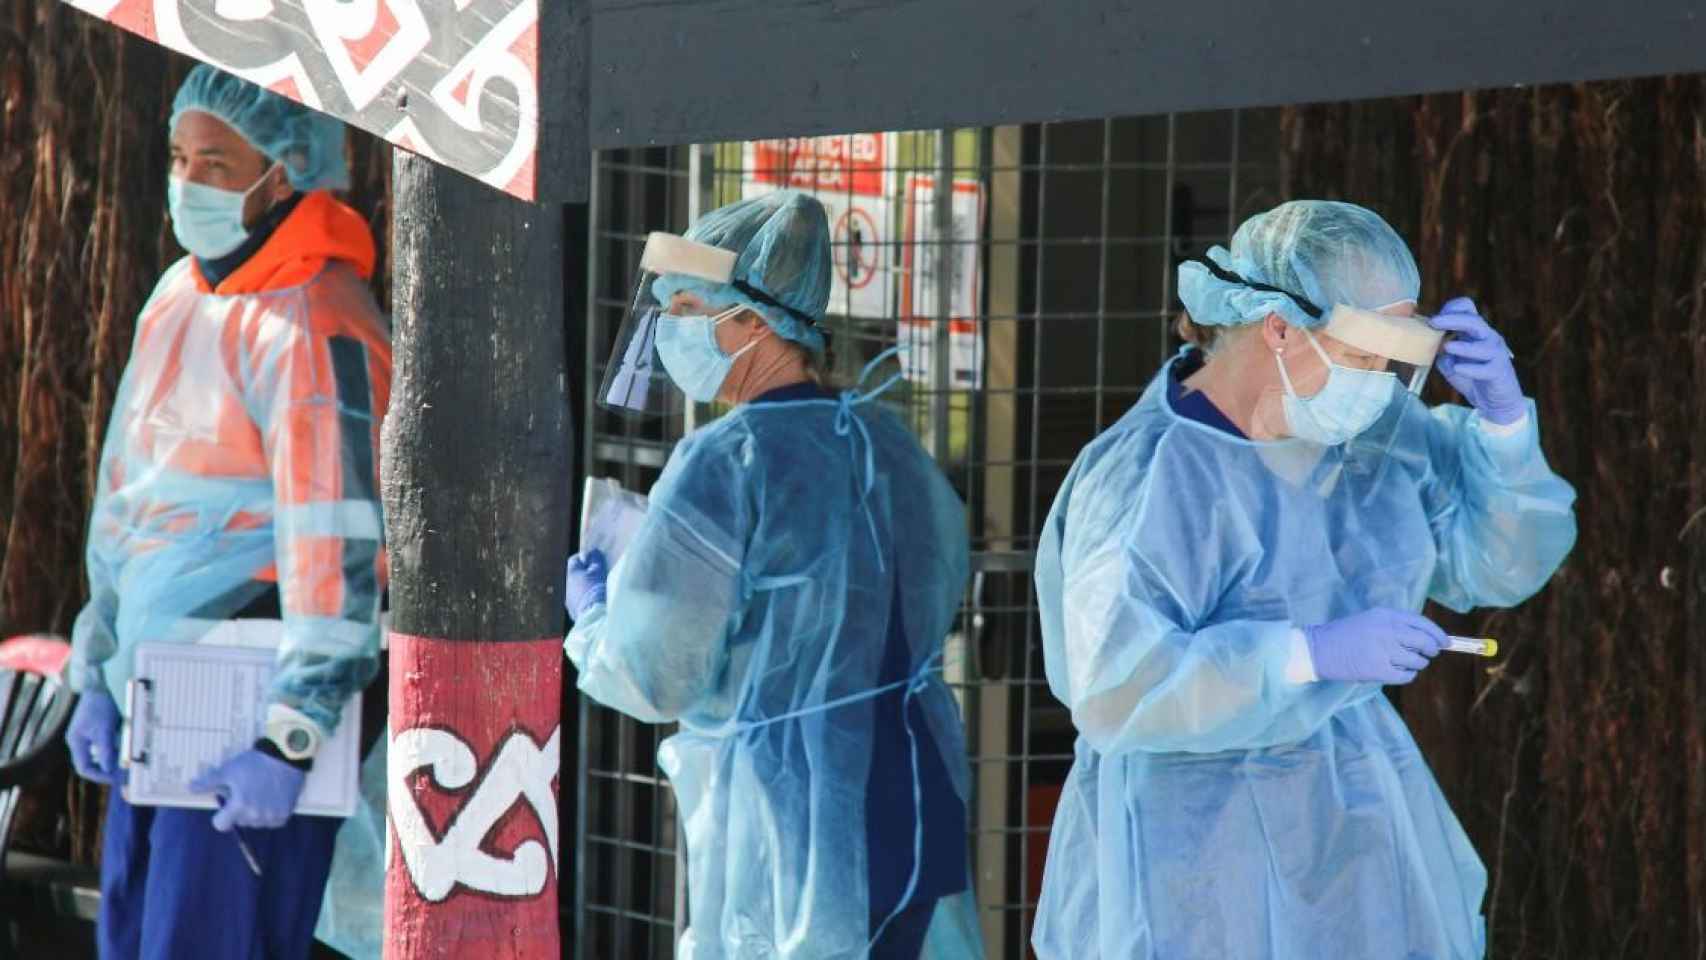 Llega la cepa más extrema de coronavirus a Portugal EP